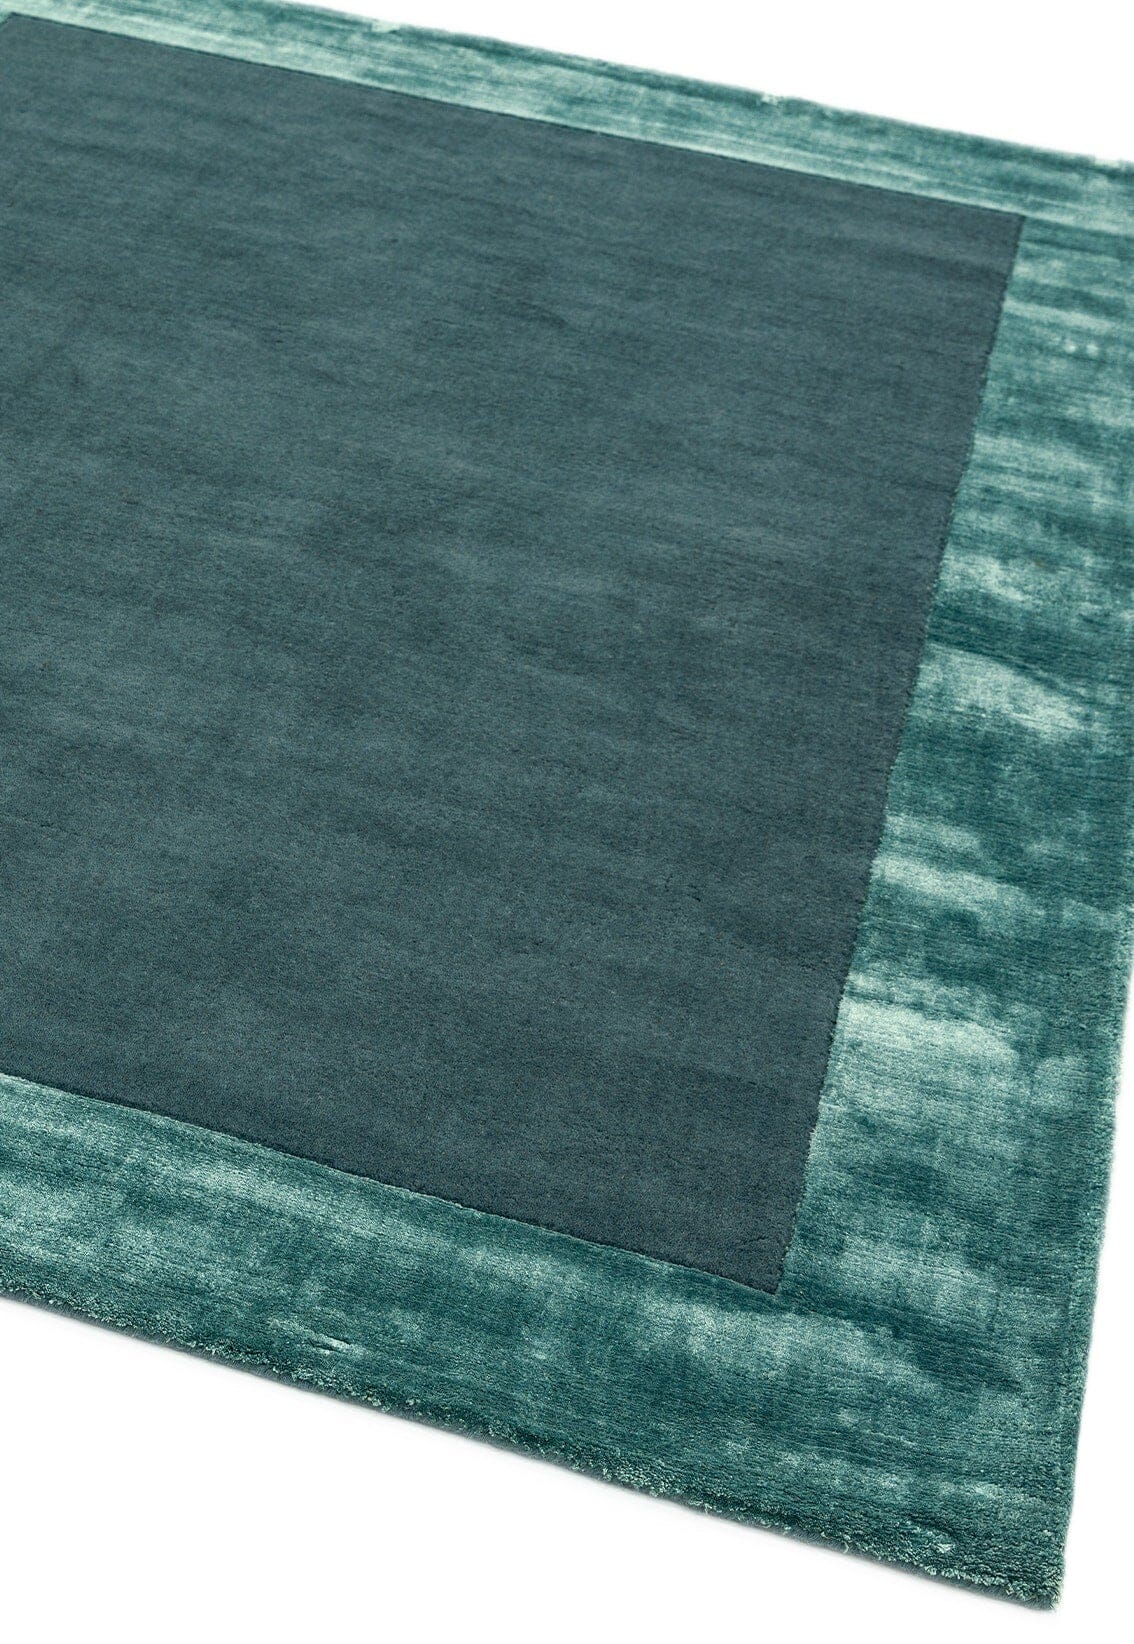 Asiatic Carpets Ascot Hand Woven Rug Aqua Blue - 120 x 170cm